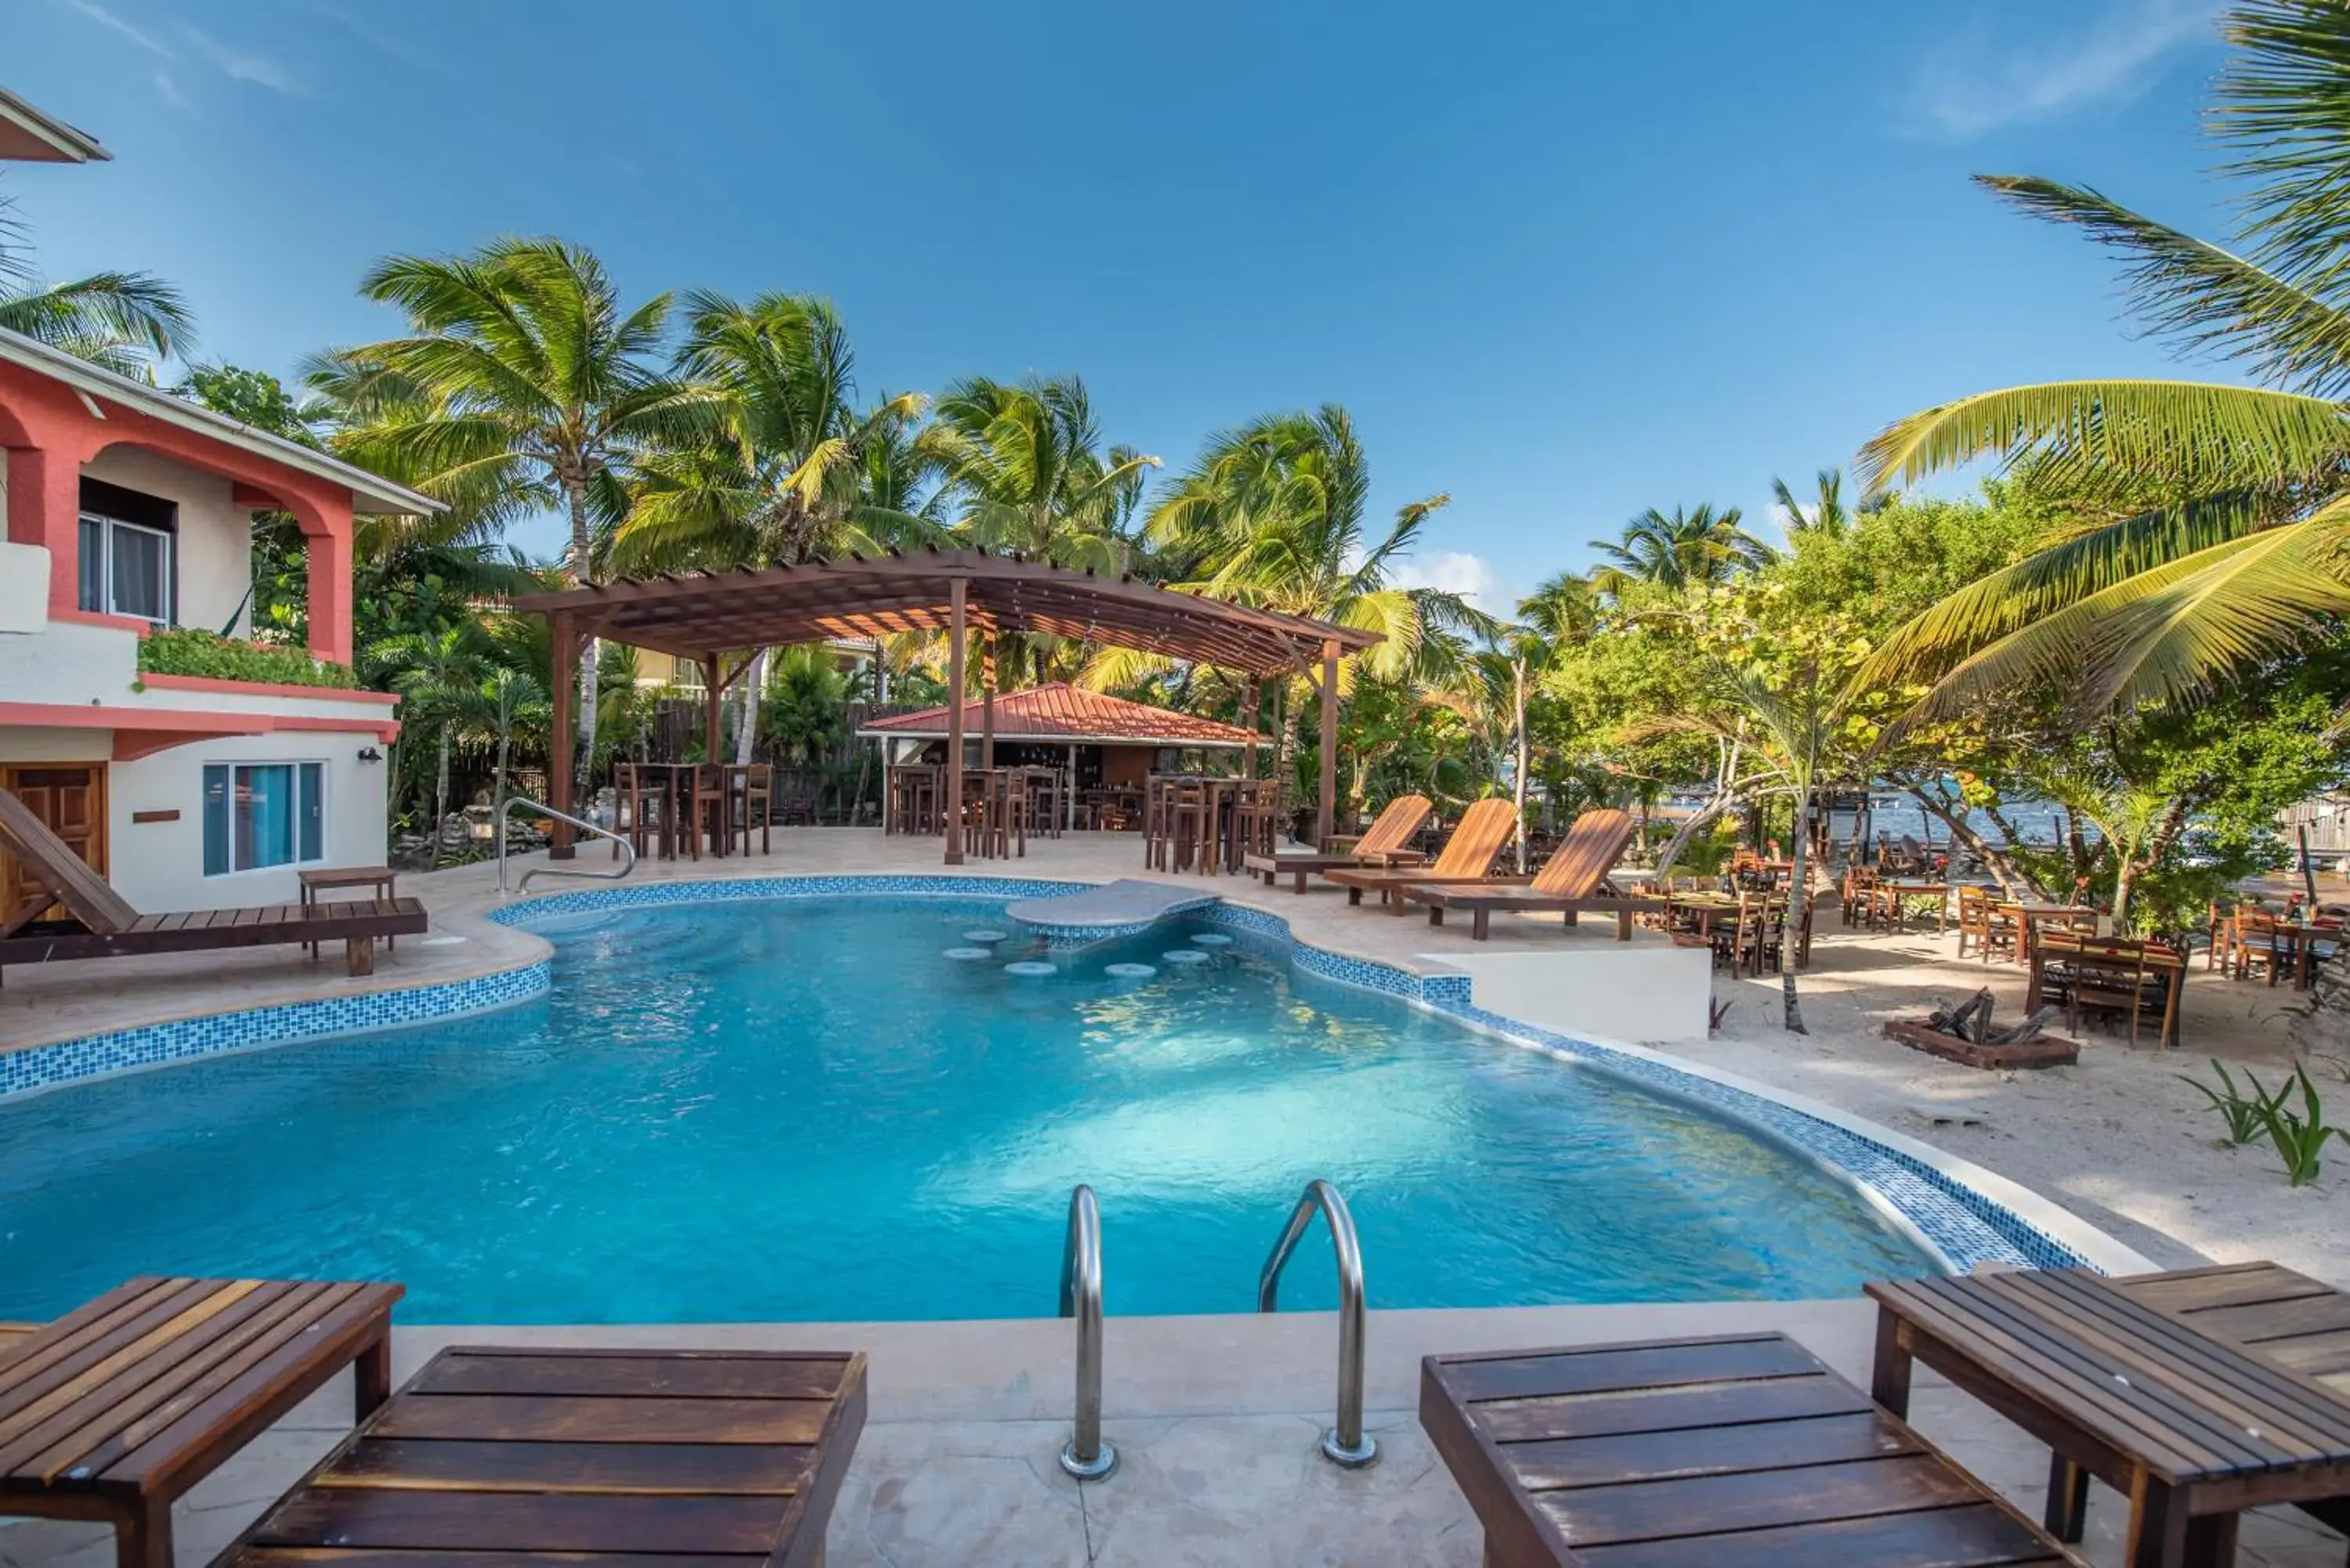 Swimming Pool in Bella Vista Resort Belize